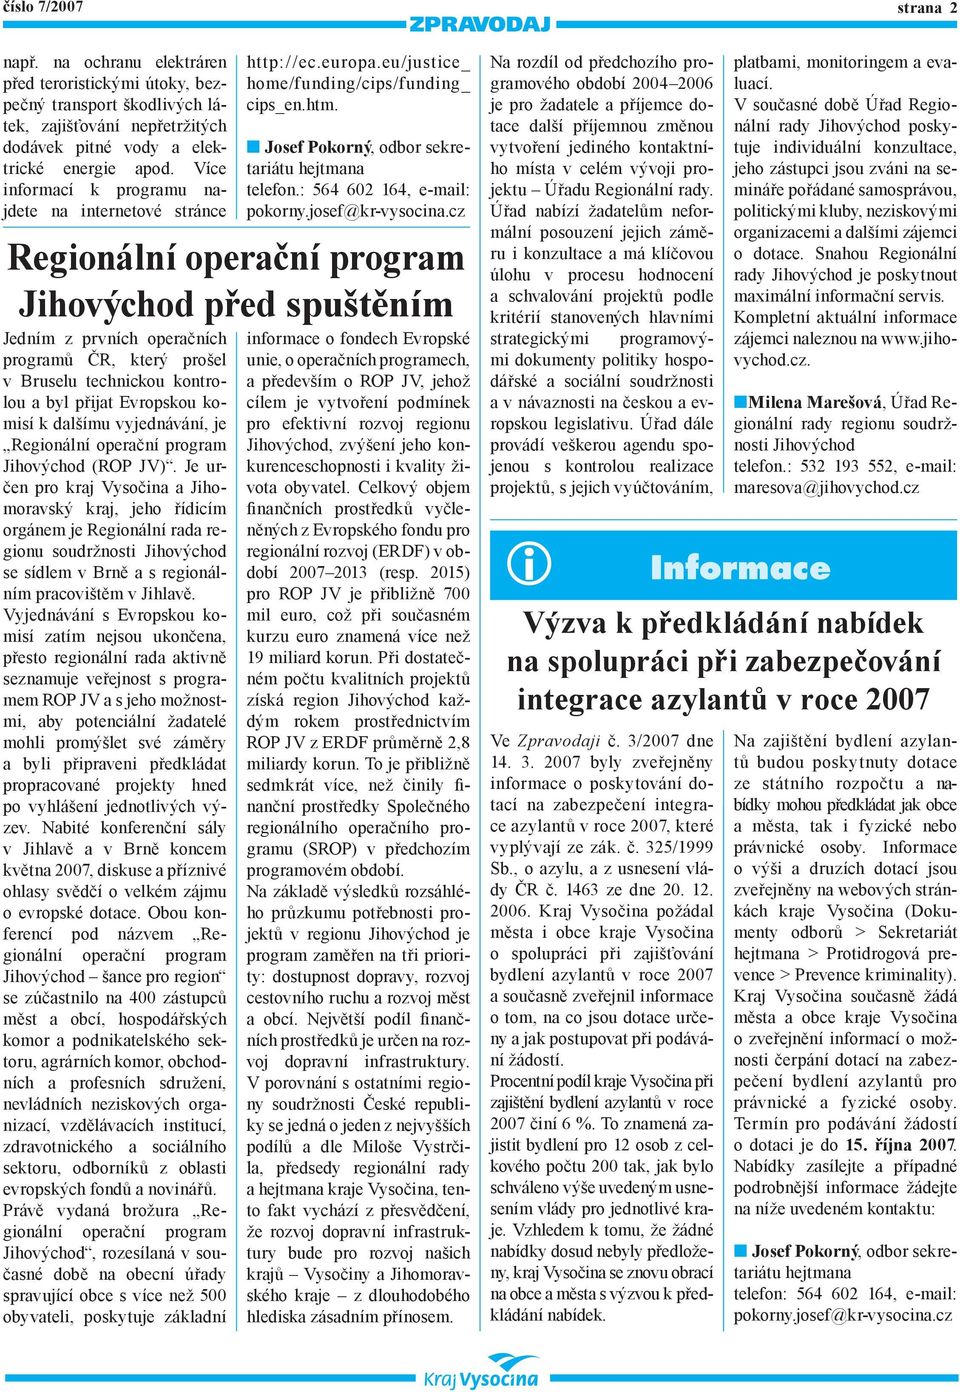 Regionální operační program Jihovýchod (ROP JV).